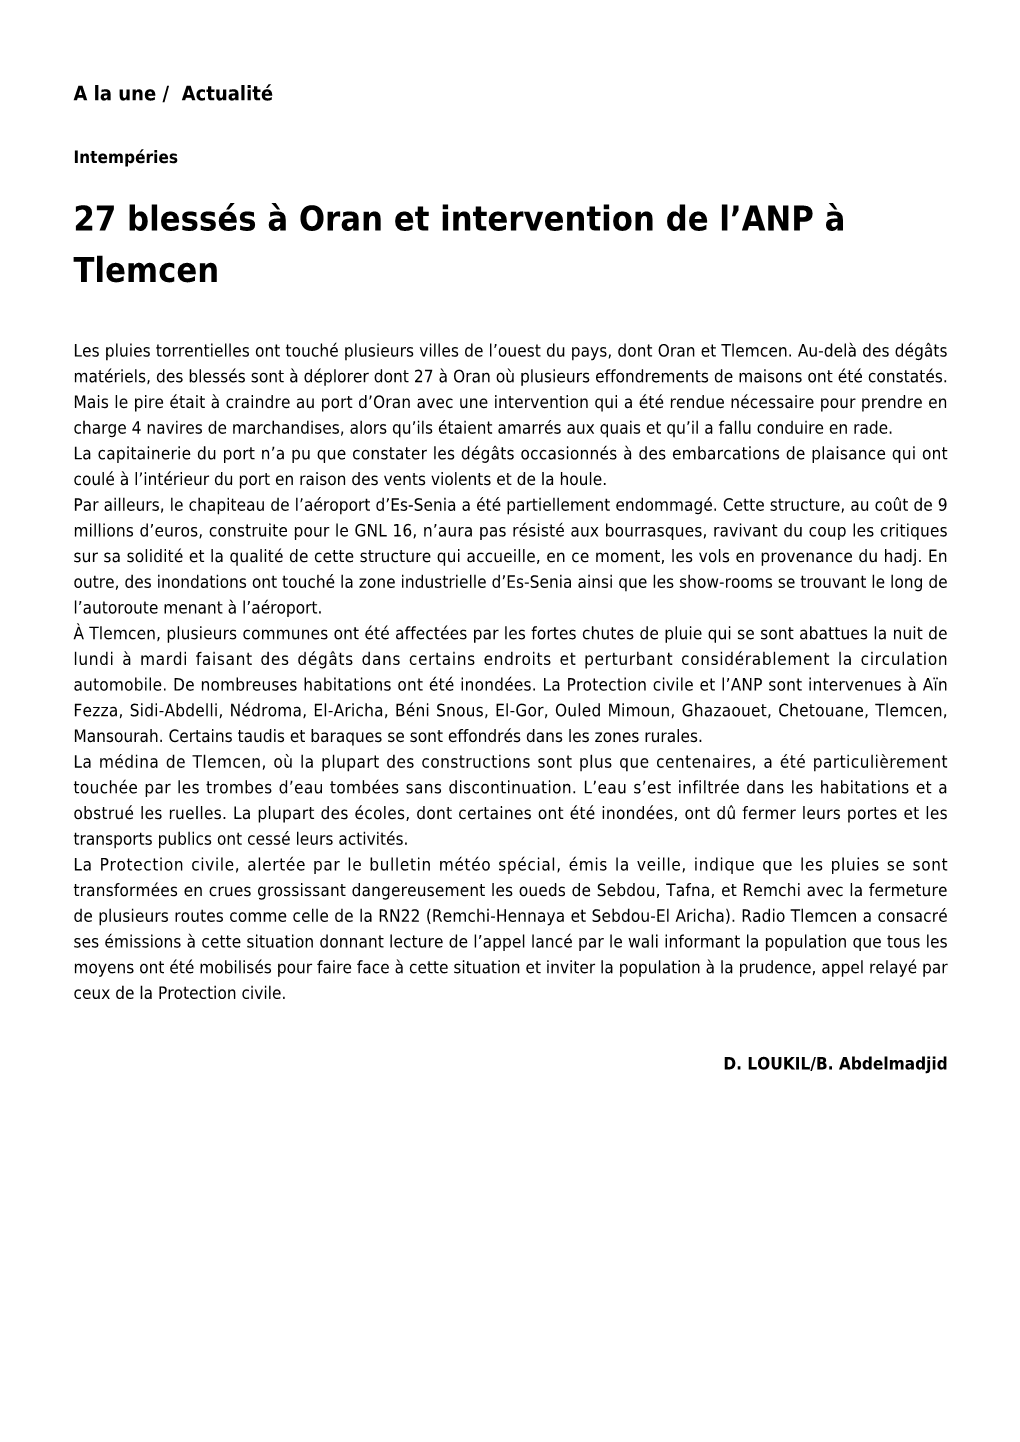 27 Blessés À Oran Et Intervention De L'anp À Tlemcen